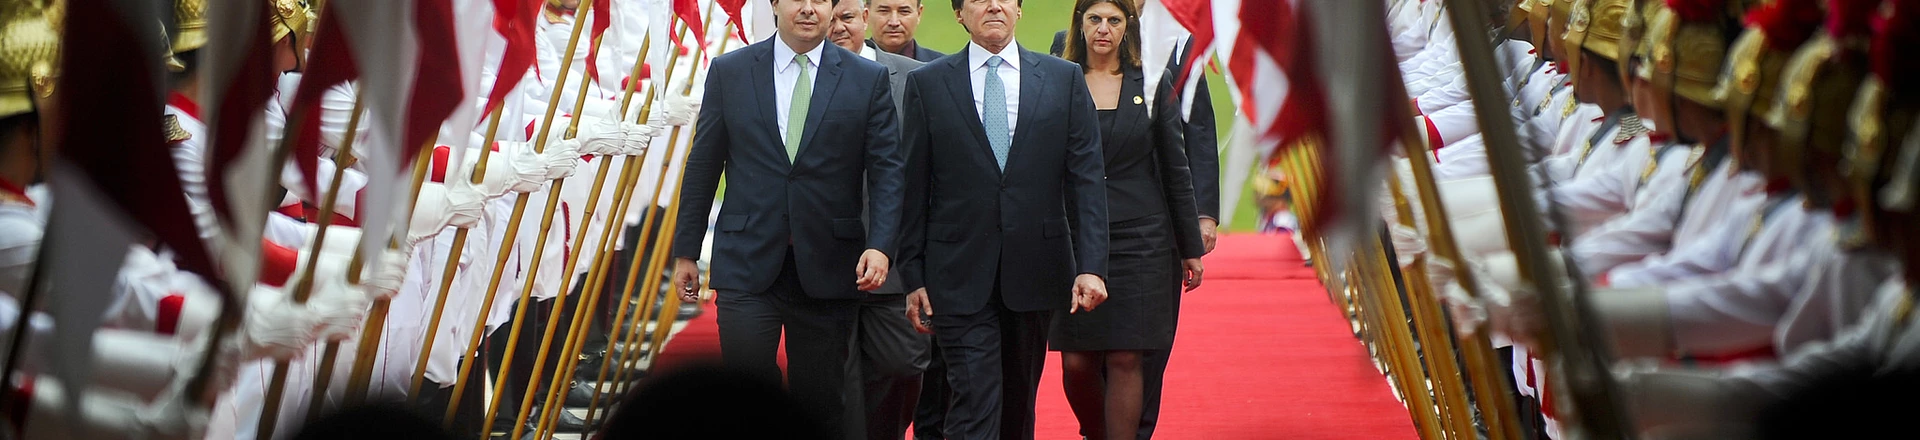 Presidente do Senado Federal, senador Eunício Oliveira (PMDB-CE), e
presidente da Câmara dos Deputados, deputado Rodrigo Maia (DEM-RJ), na abertura do ano legislativo